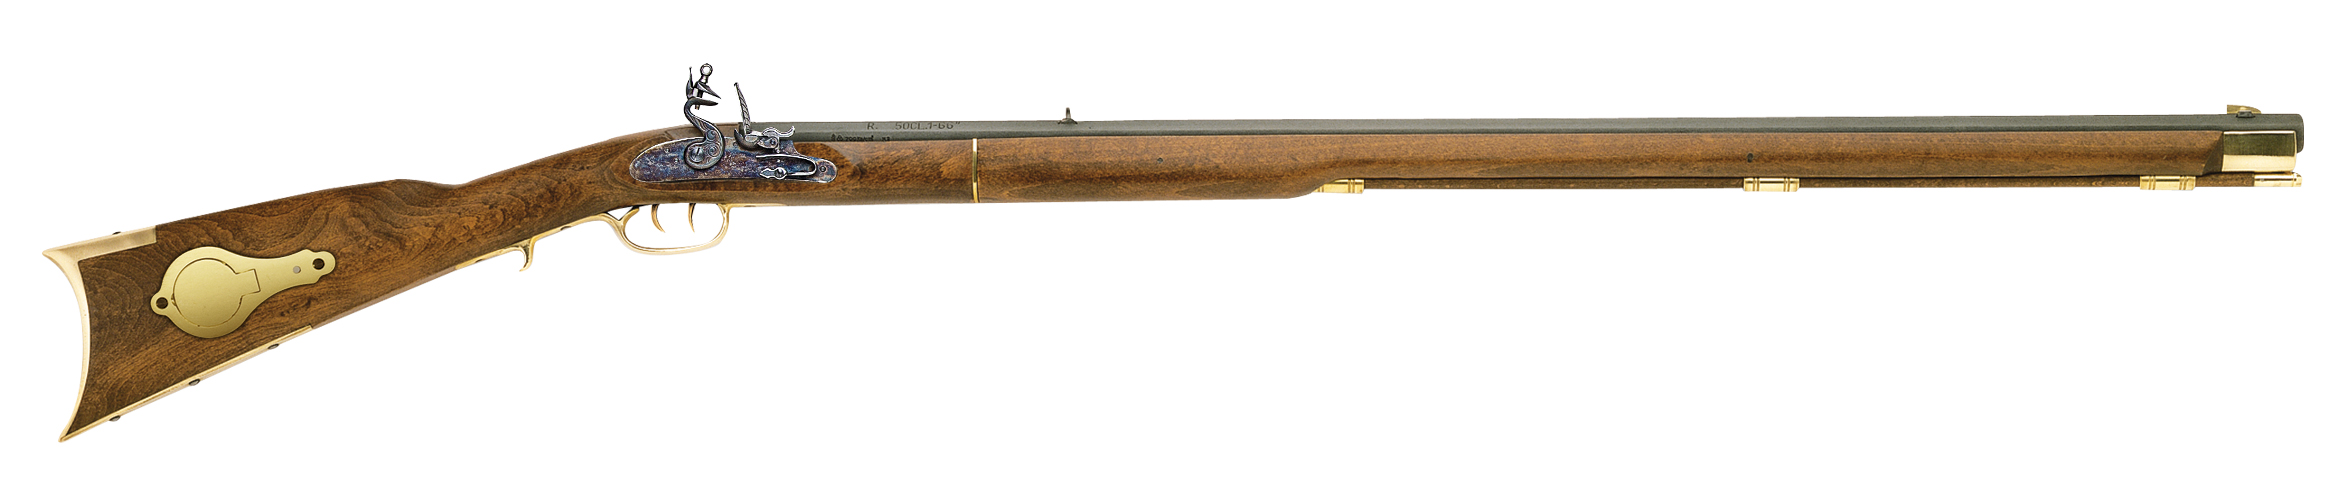 Deluxe Kentucky Rifle .50 cal Flintlock Select Hardwood/Blued R2030-02